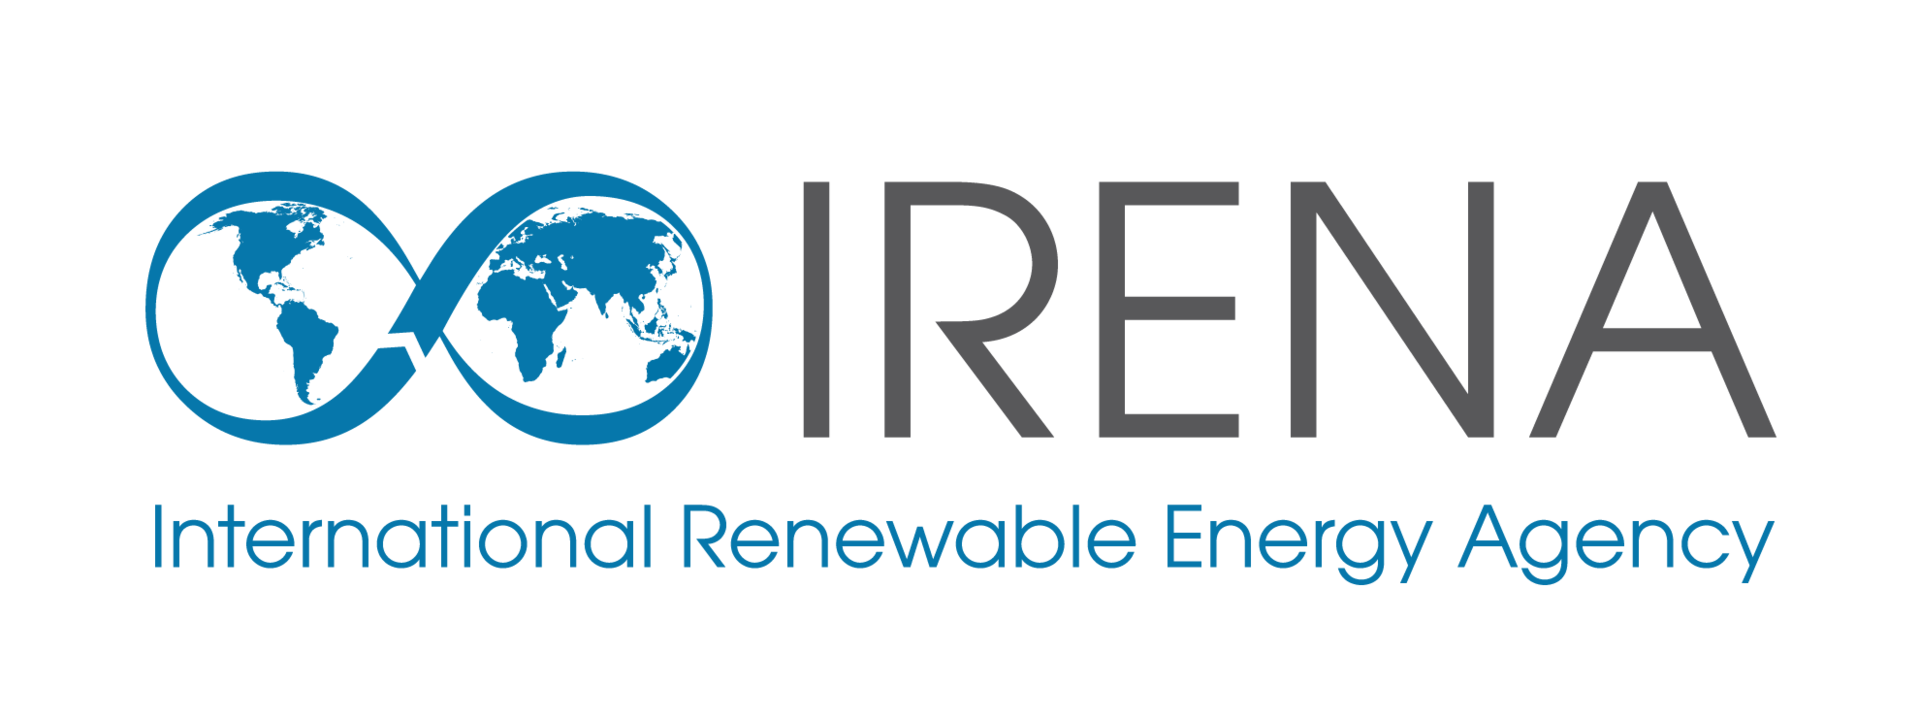 IRENA - International Renewable Energy Agency - Международное агентство по возобновляемым источникам энергии